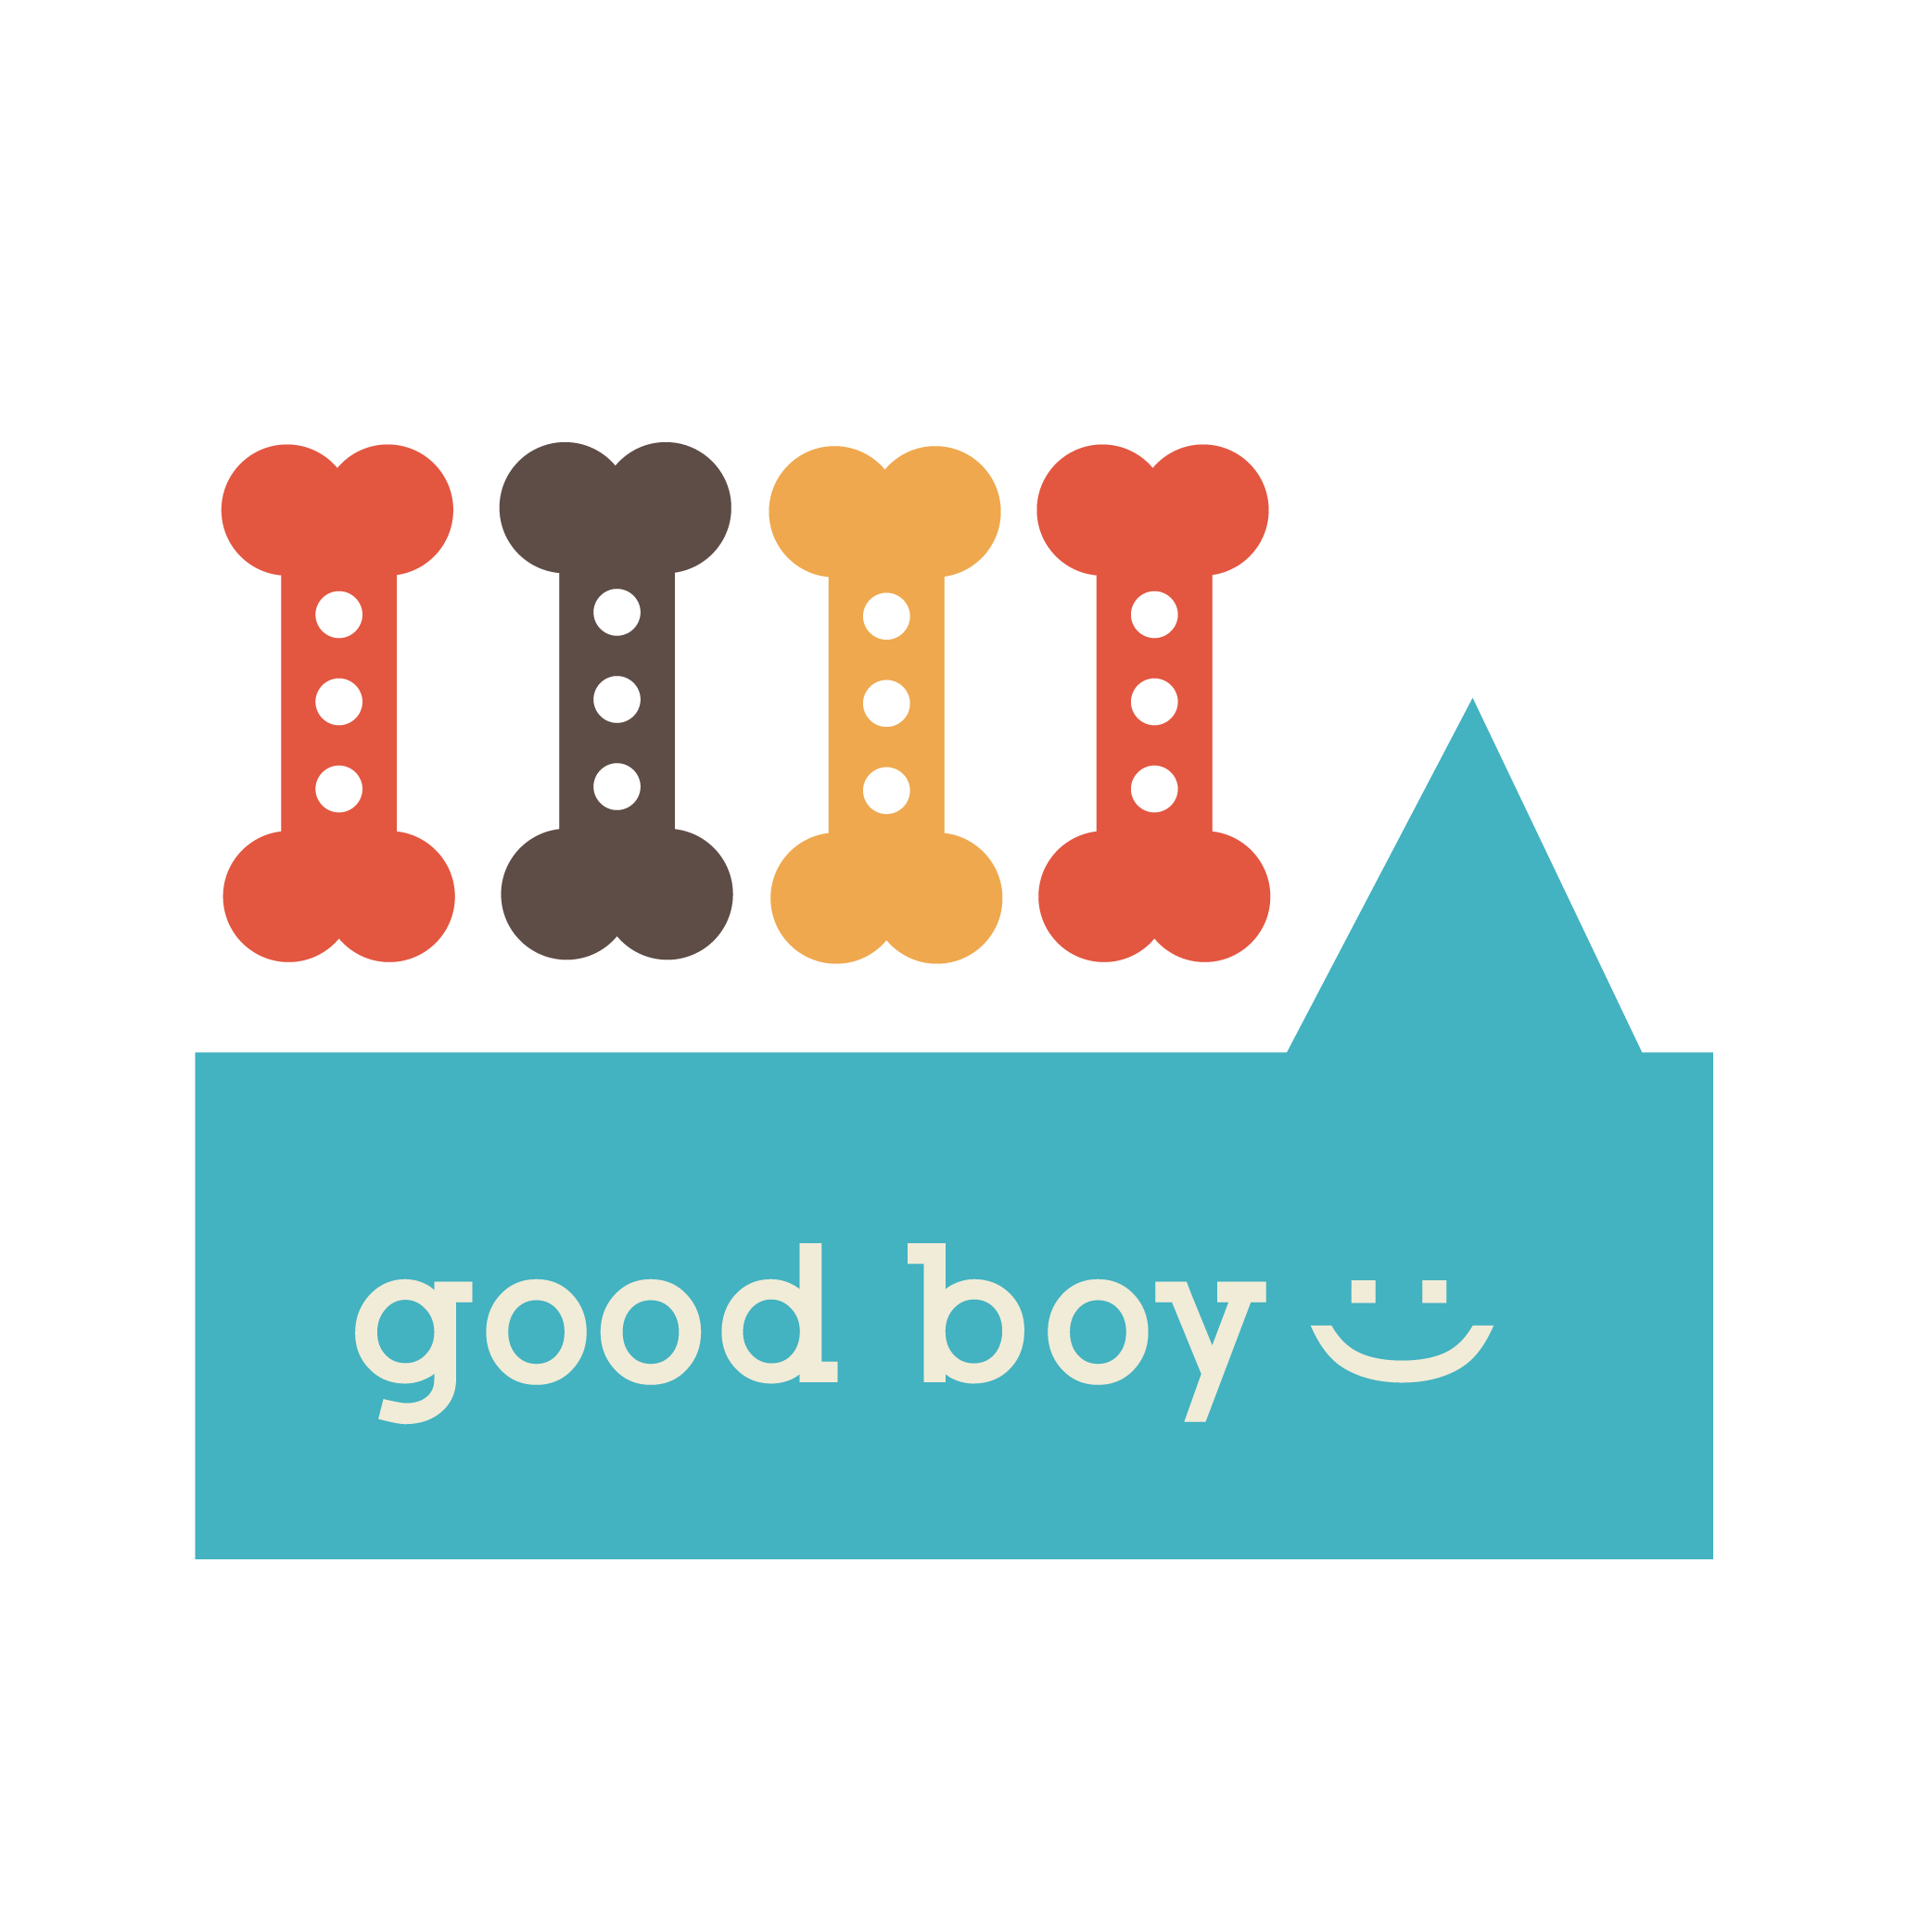 Good Boy: Positive Reinforcement